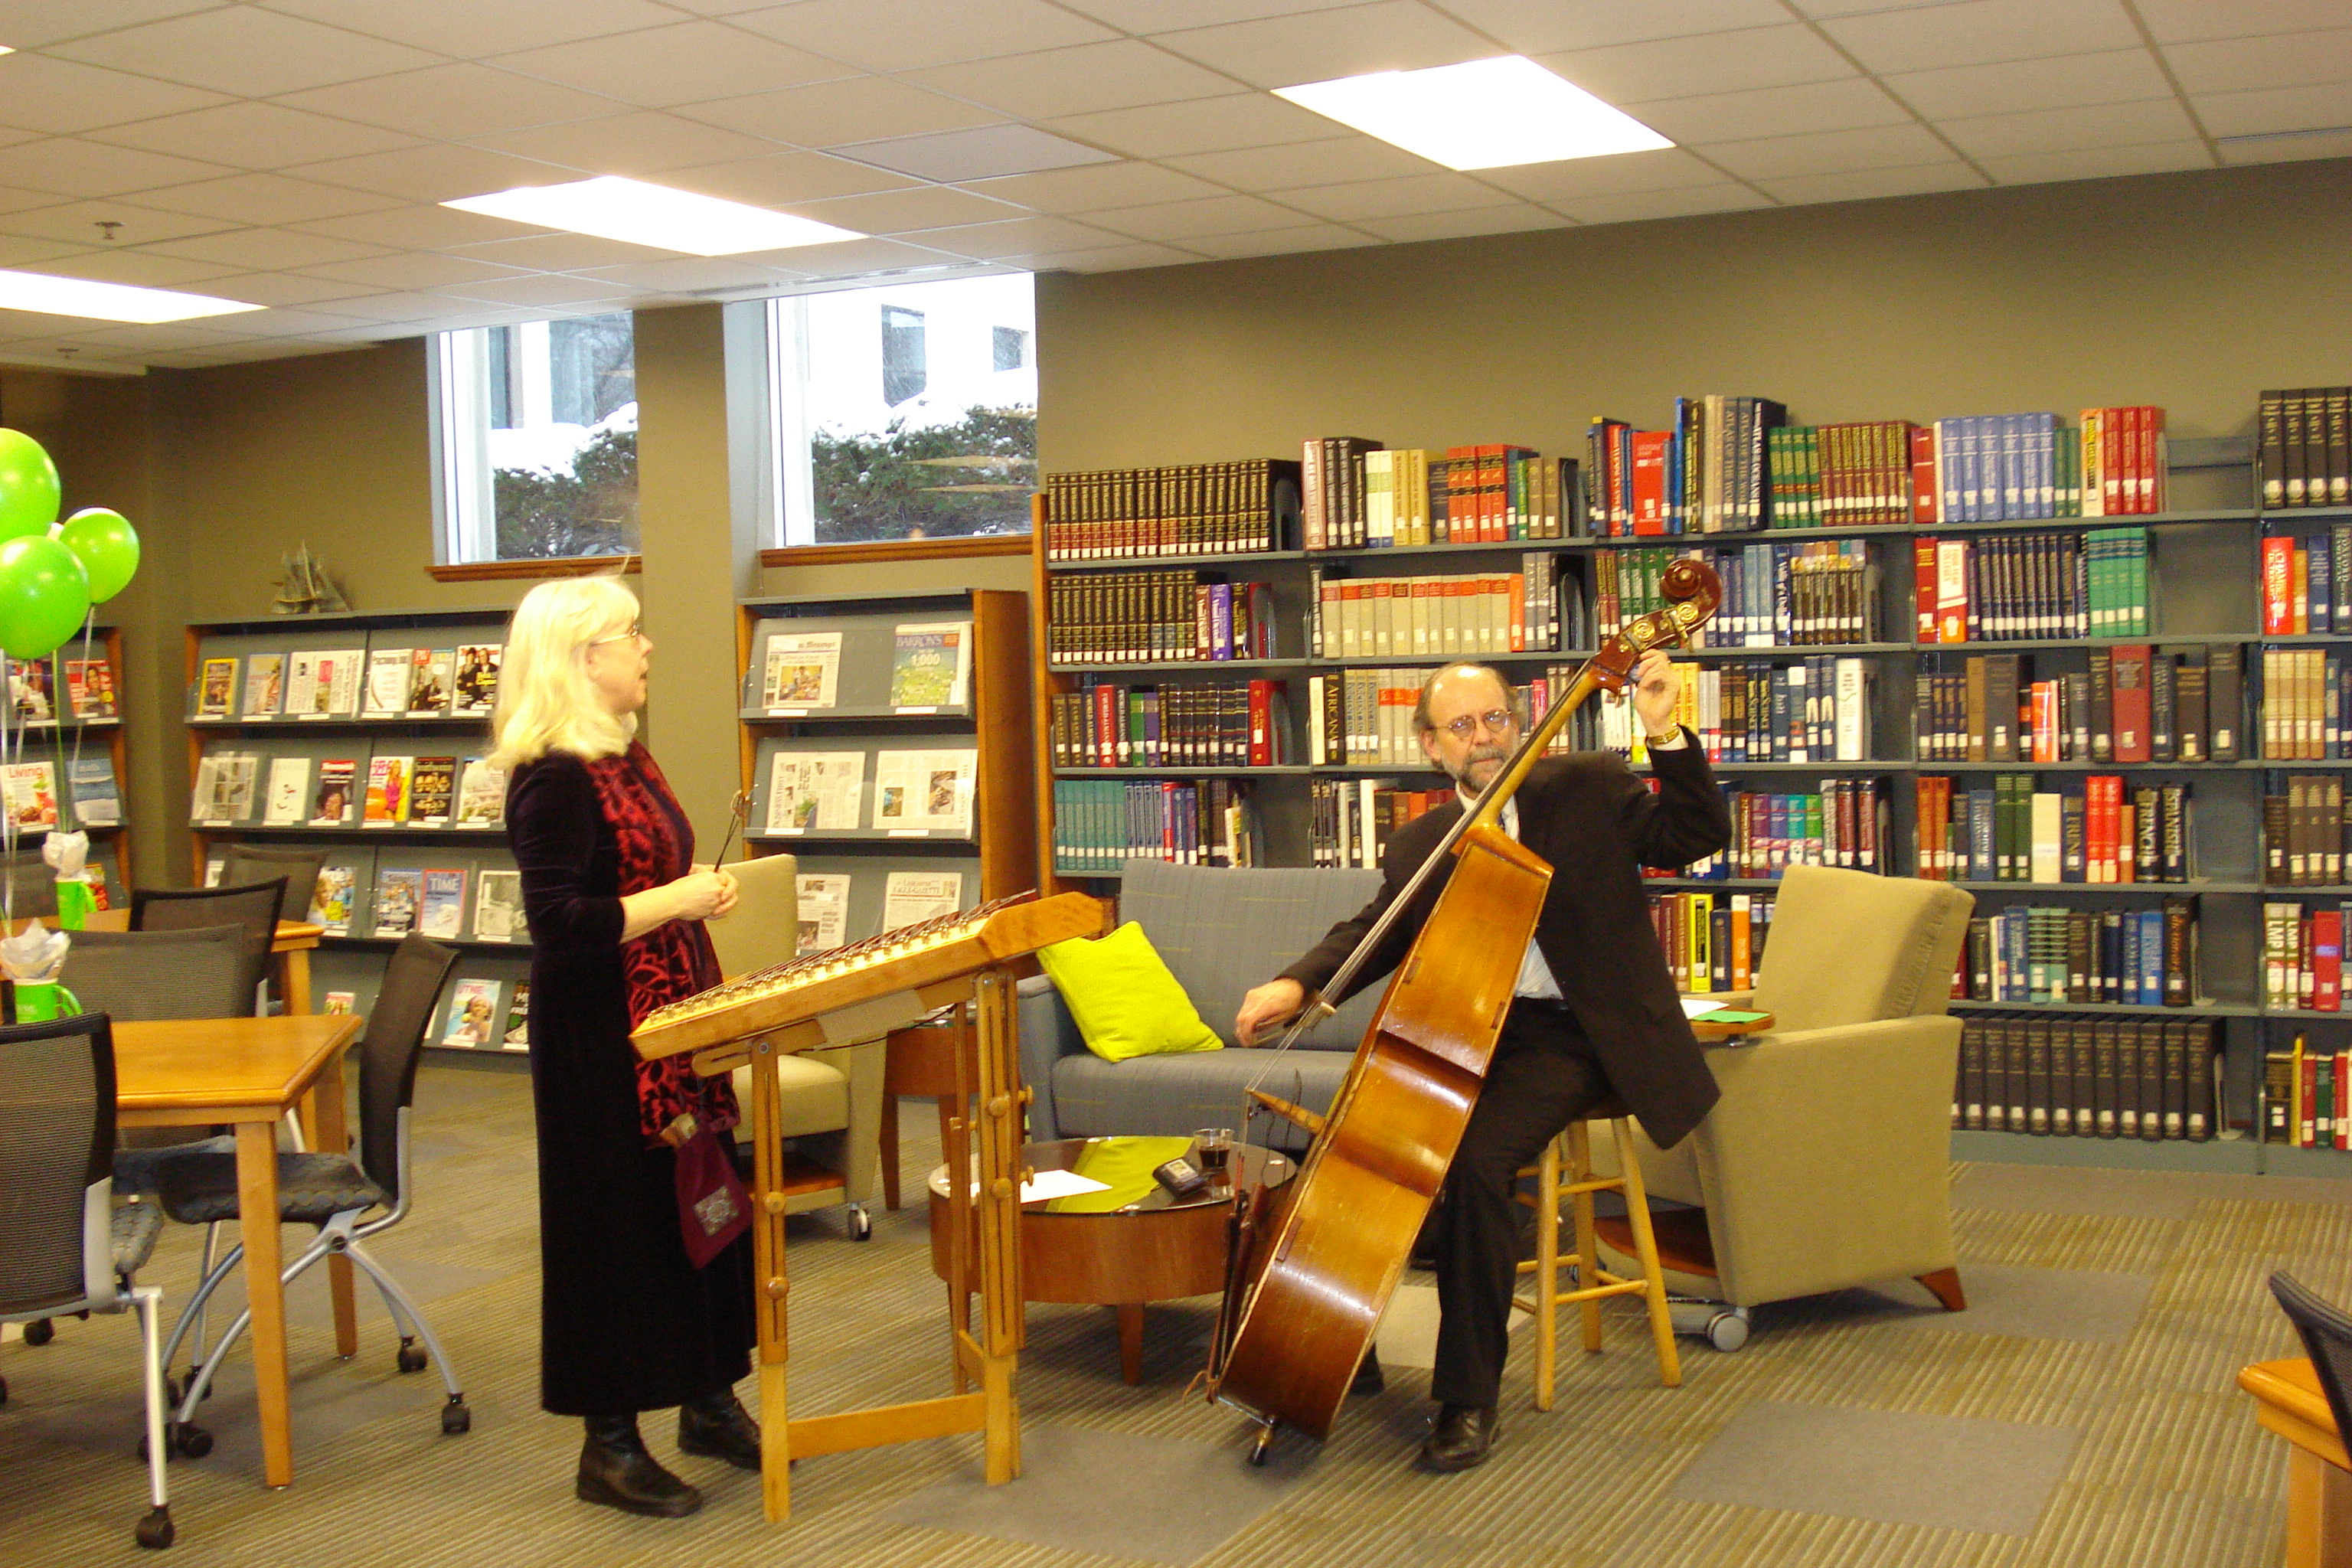 Есть библиотека песня. Музыкальная библиотека. Библиотека музыканта. Музыкальный вечер в библиотеке. Библиотека в музыкальной школе.